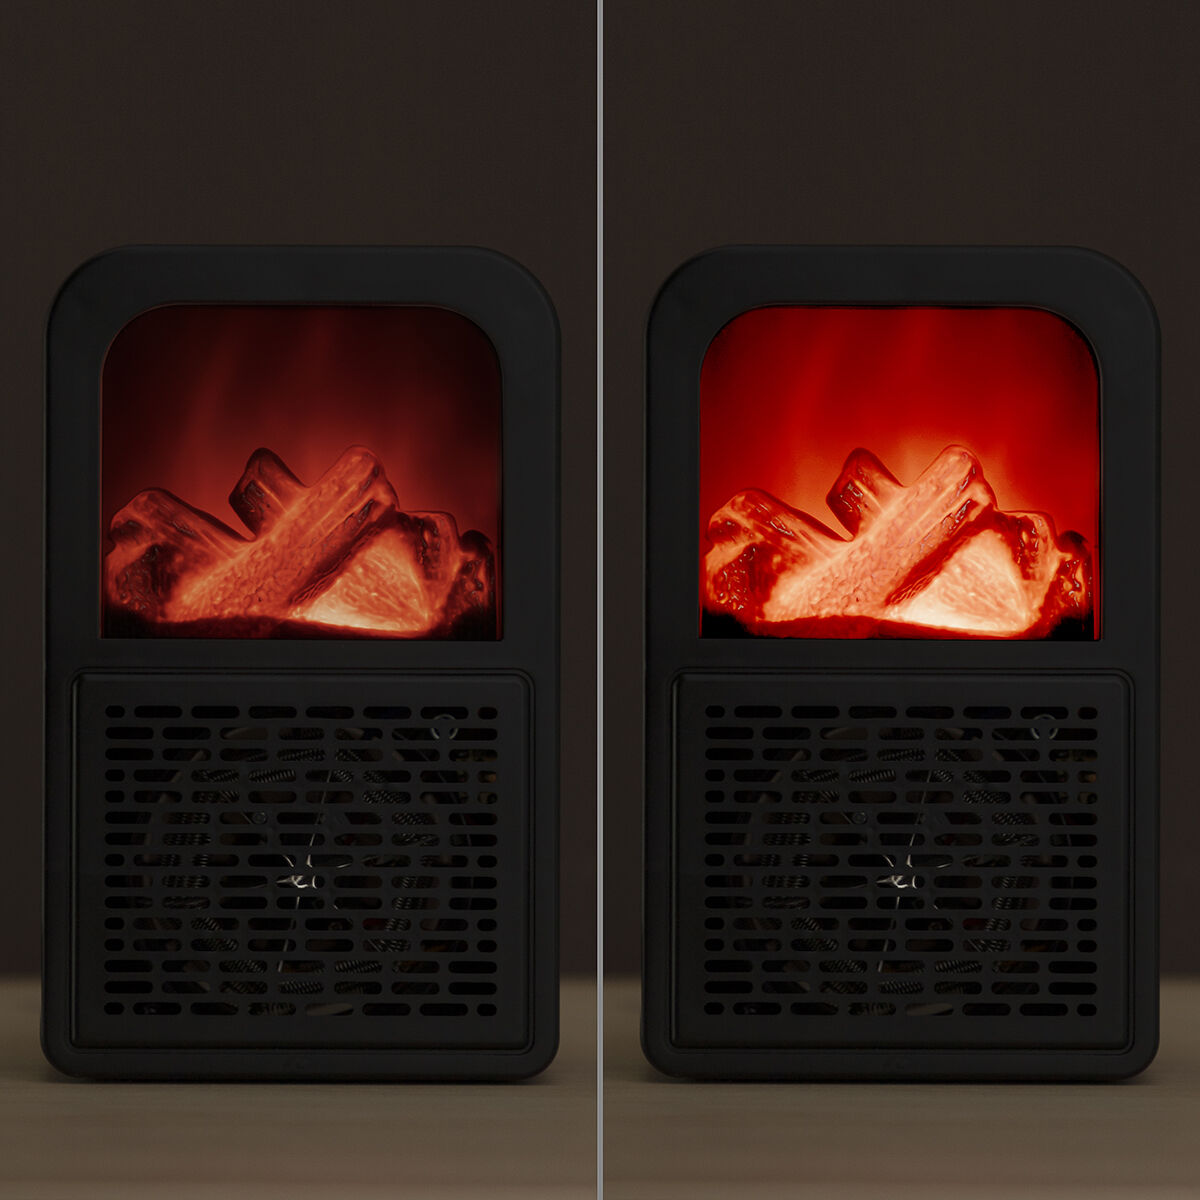 Calefactor de Sobremesa Efecto Llama 3D Flehatt InnovaGoods